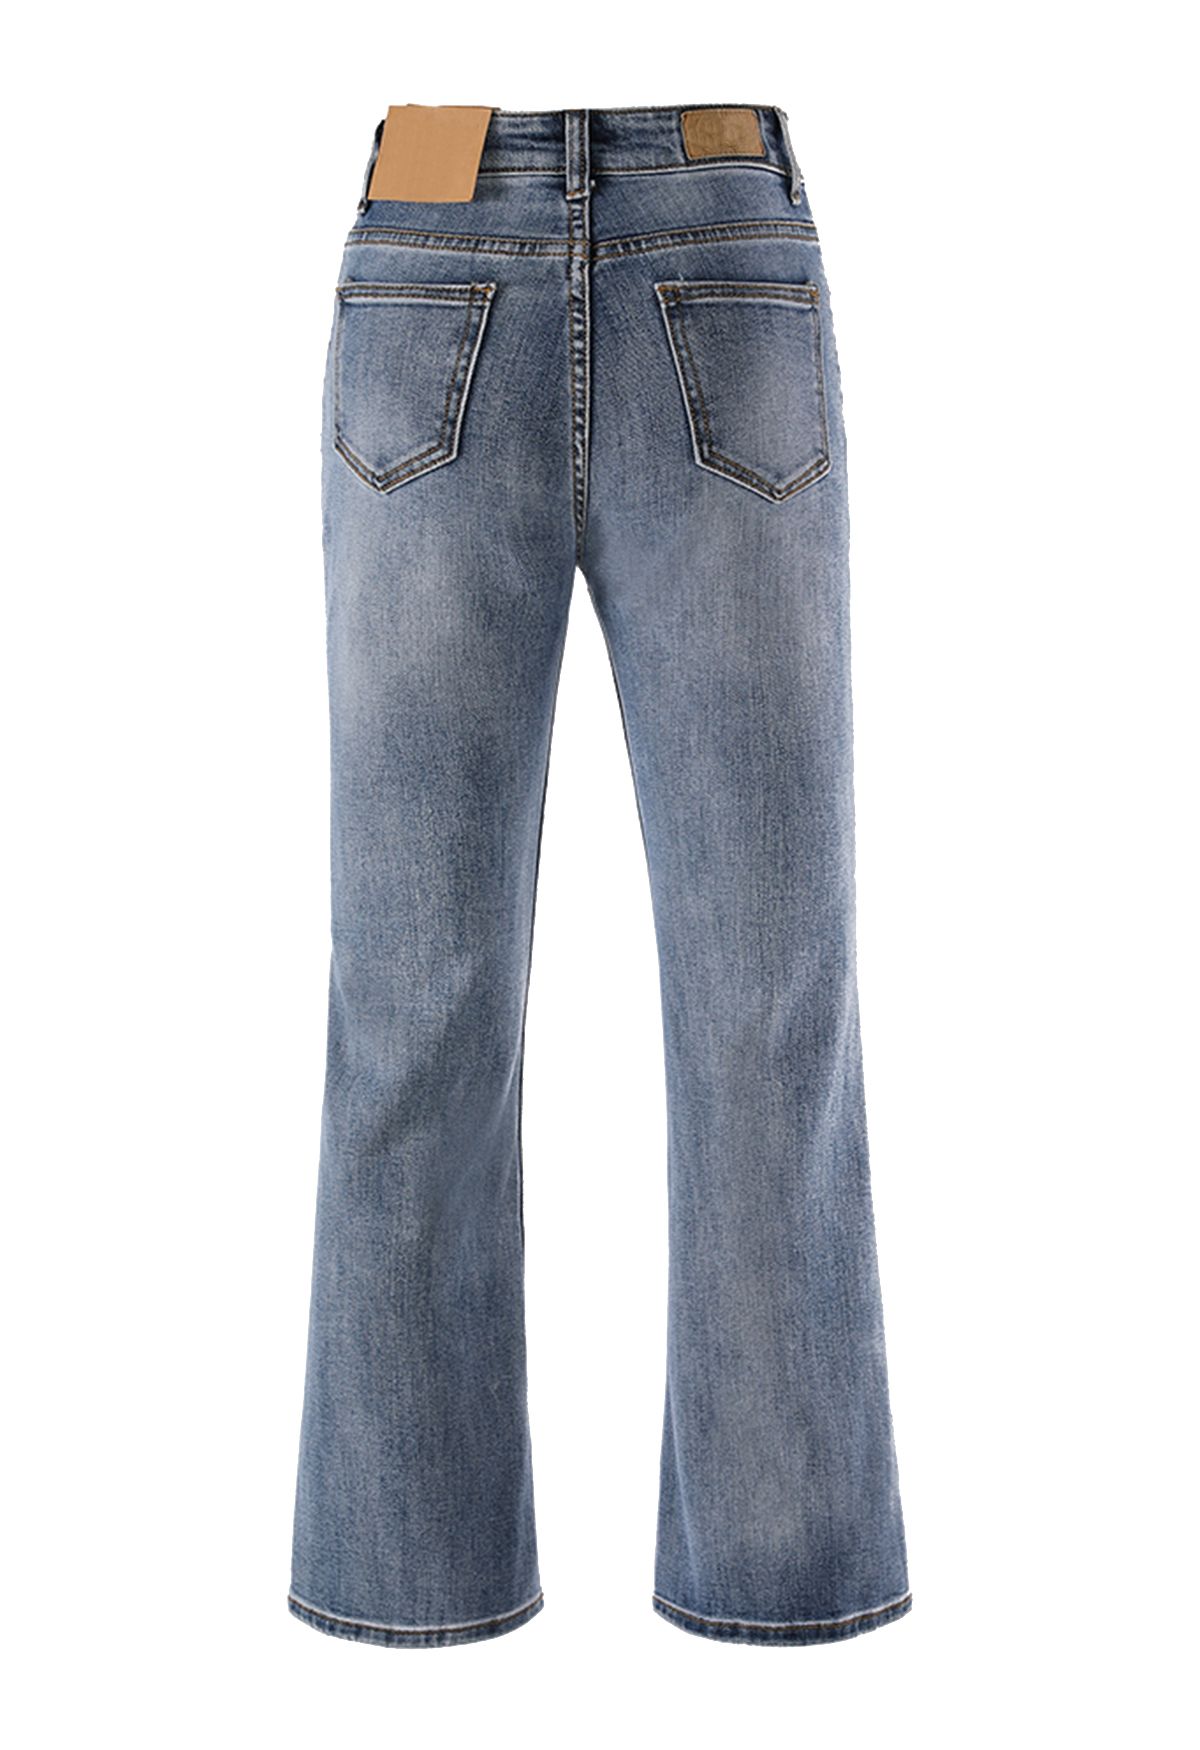 Vintage blau zerrissene Flare-Jeans